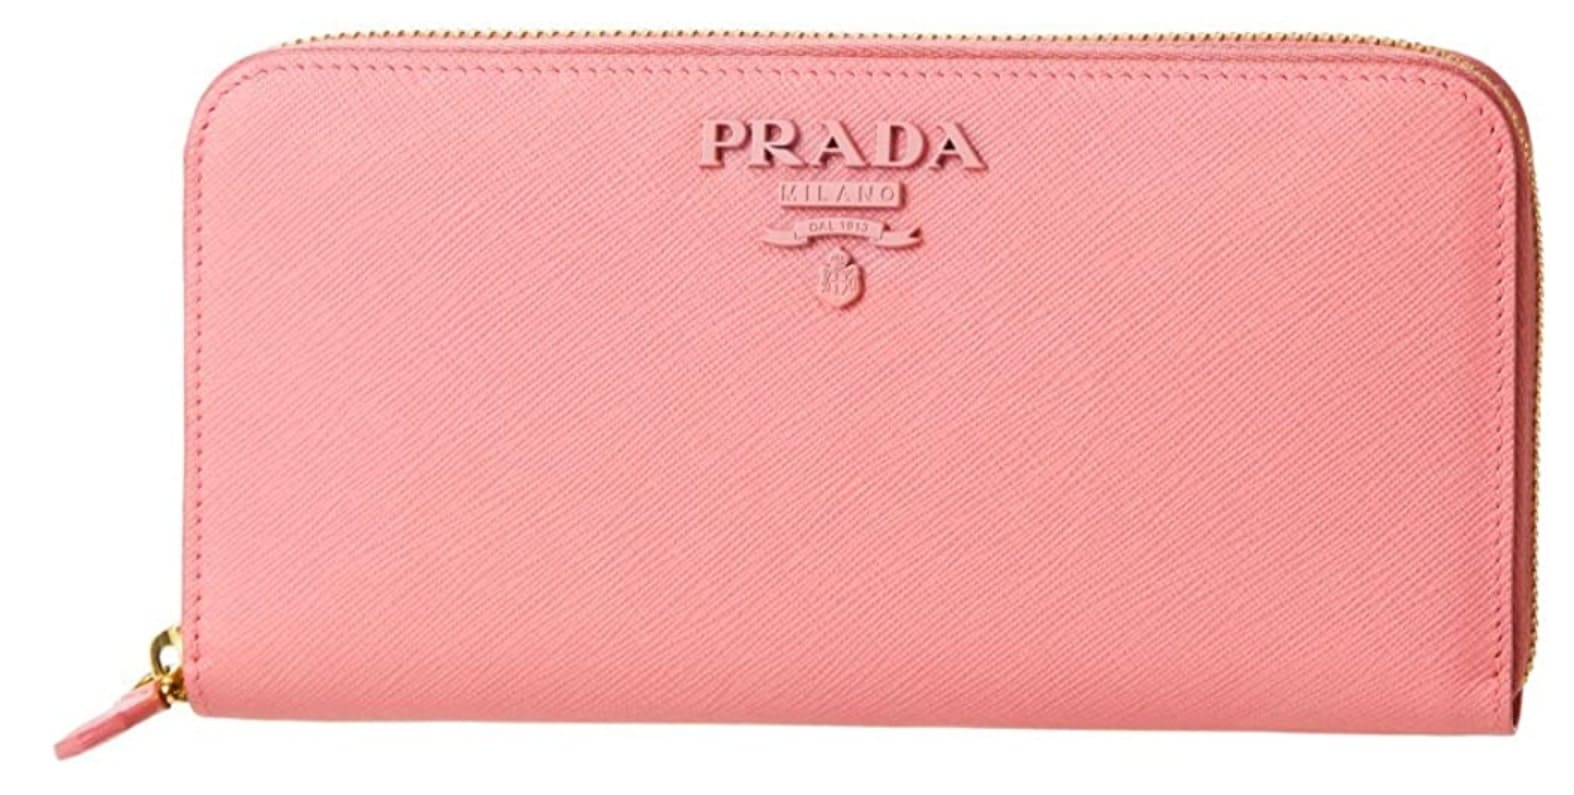 プラダのラウンドジップ財布ピンク色